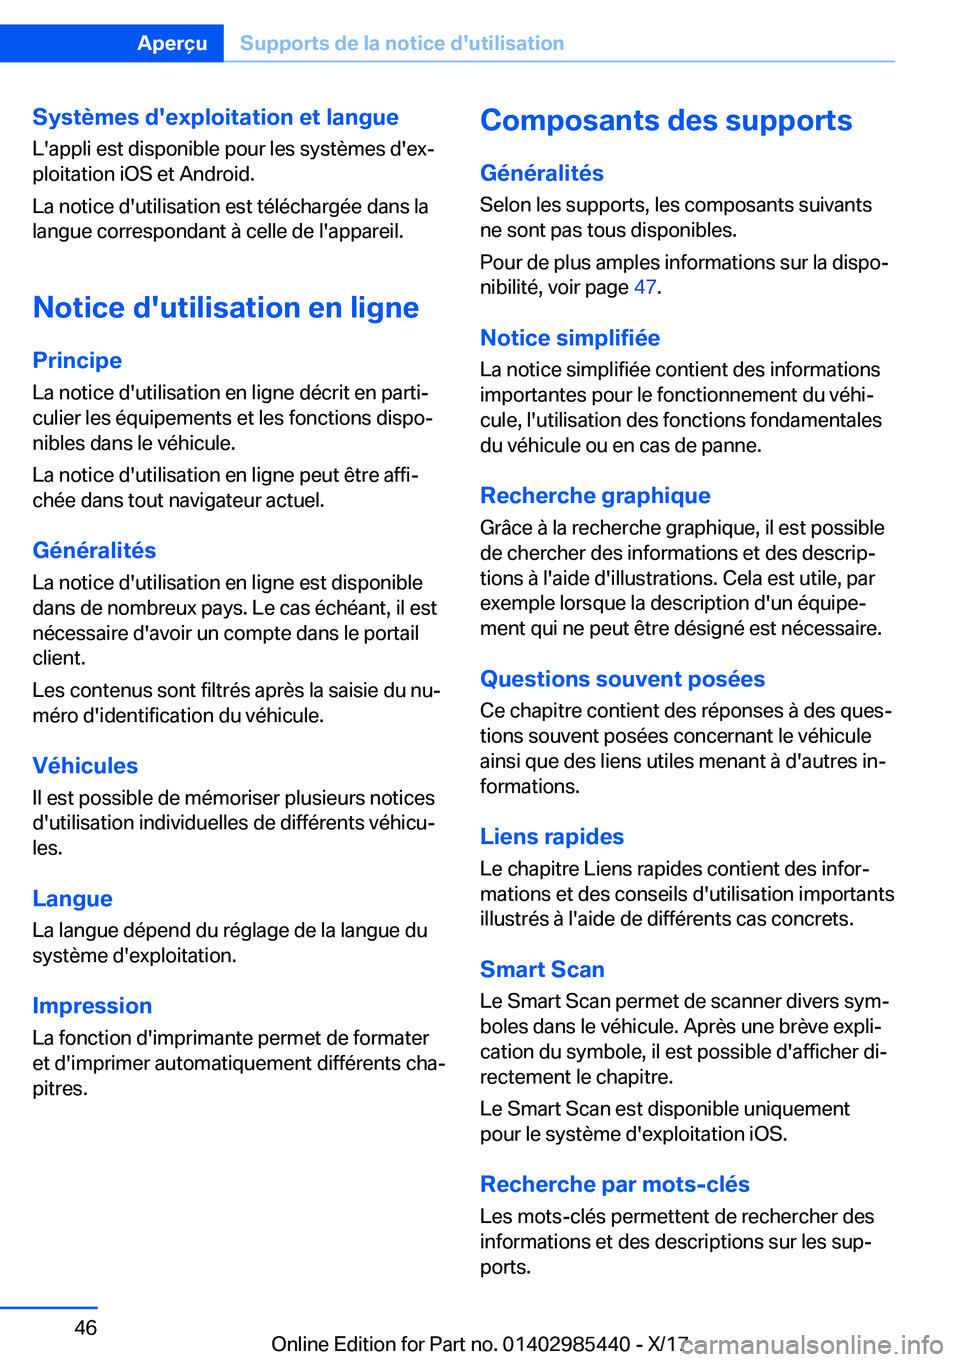 BMW X1 2018  Notices Demploi (in French) �S�y�s�t�è�m�e�s��d�'�e�x�p�l�o�i�t�a�t�i�o�n��e�t��l�a�n�g�u�e
�L�'�a�p�p�l�i� �e�s�t� �d�i�s�p�o�n�i�b�l�e� �p�o�u�r� �l�e�s� �s�y�s�t�è�m�e�s� �d�'�e�xj
�p�l�o�i�t�a�t�i�o�n� �i�O